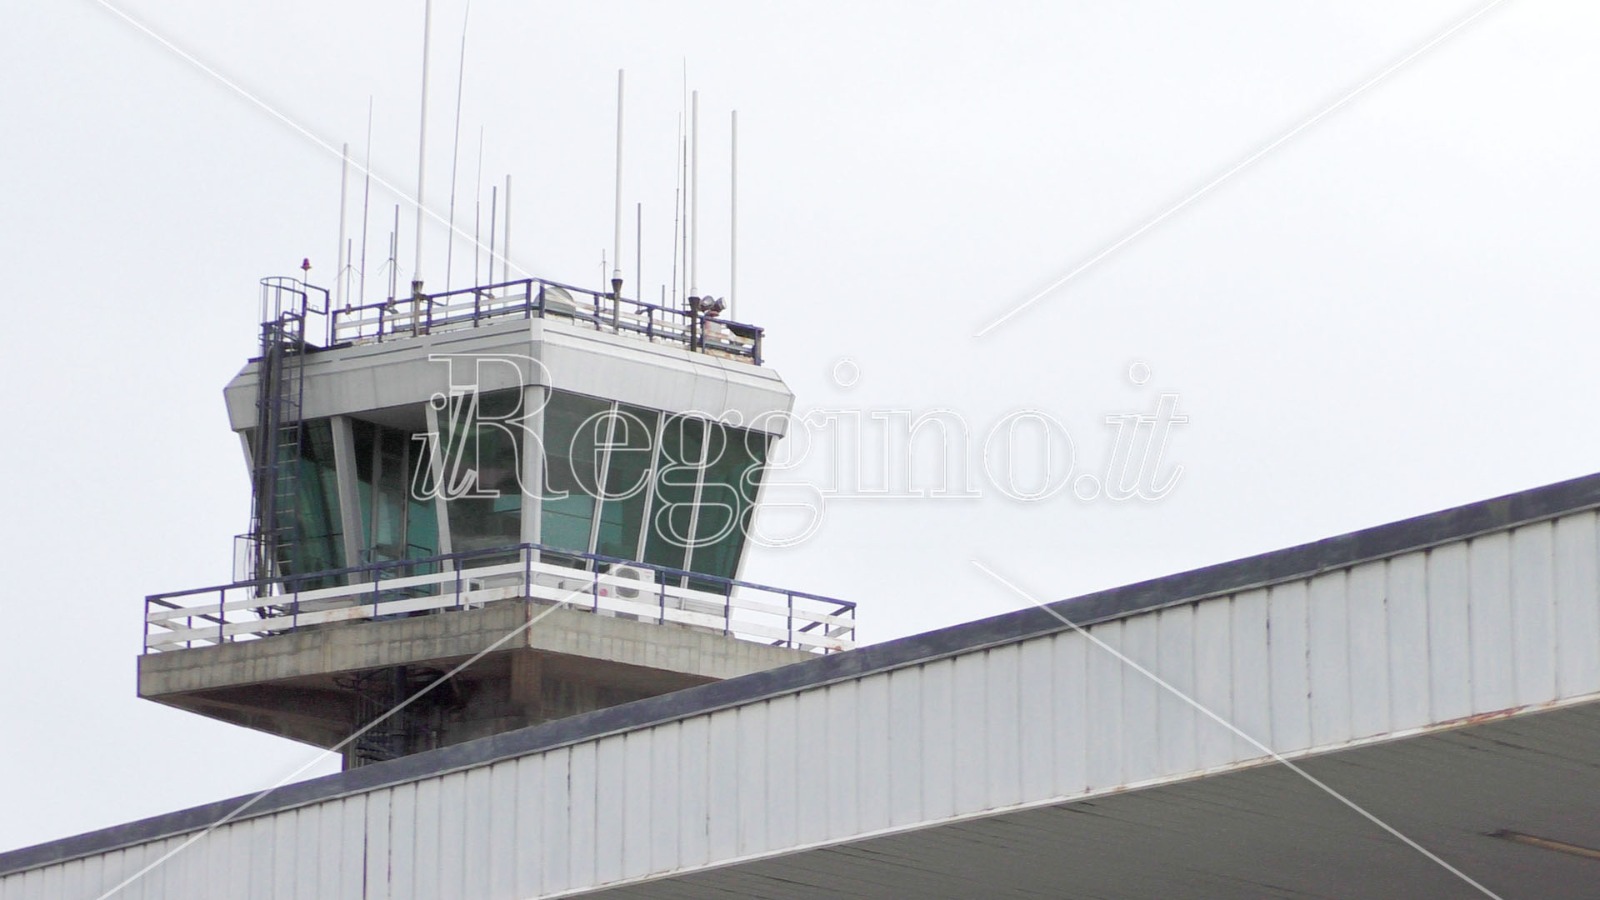 Aeroporto Reggio Calabria: Blue Panorama ritornerà a volare su Milano Linate dal 31/05/2021?